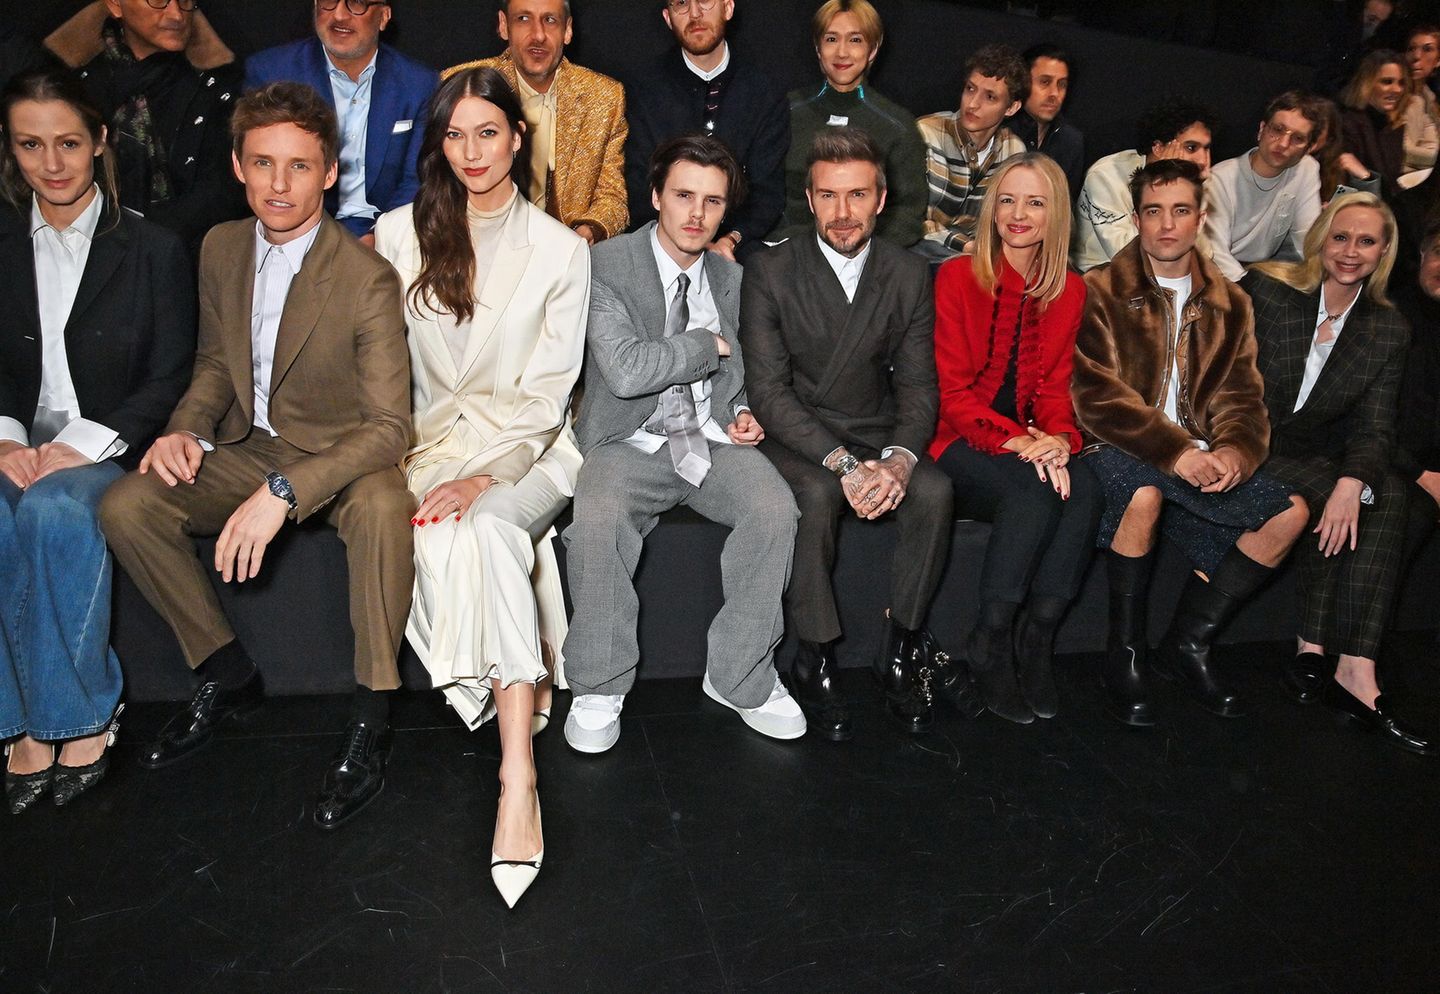 Starbesetzter könnte eine Front Row kaum sein: Hannah und Eddie Redmayne, Topmodel Karlie Kloss, Cruz und David Beckham, Delphine Arnault, Robert Pattinson und Gwendoline Christie sind schon ganz gespannt auf die neue Dior-Homme-Kollektion.